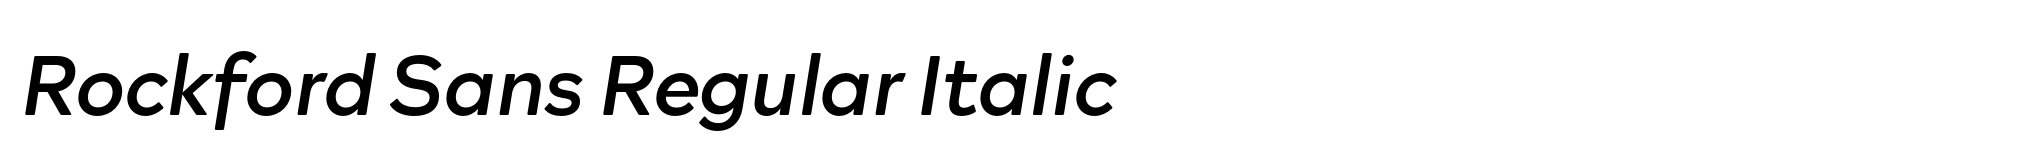 Rockford Sans Regular Italic image